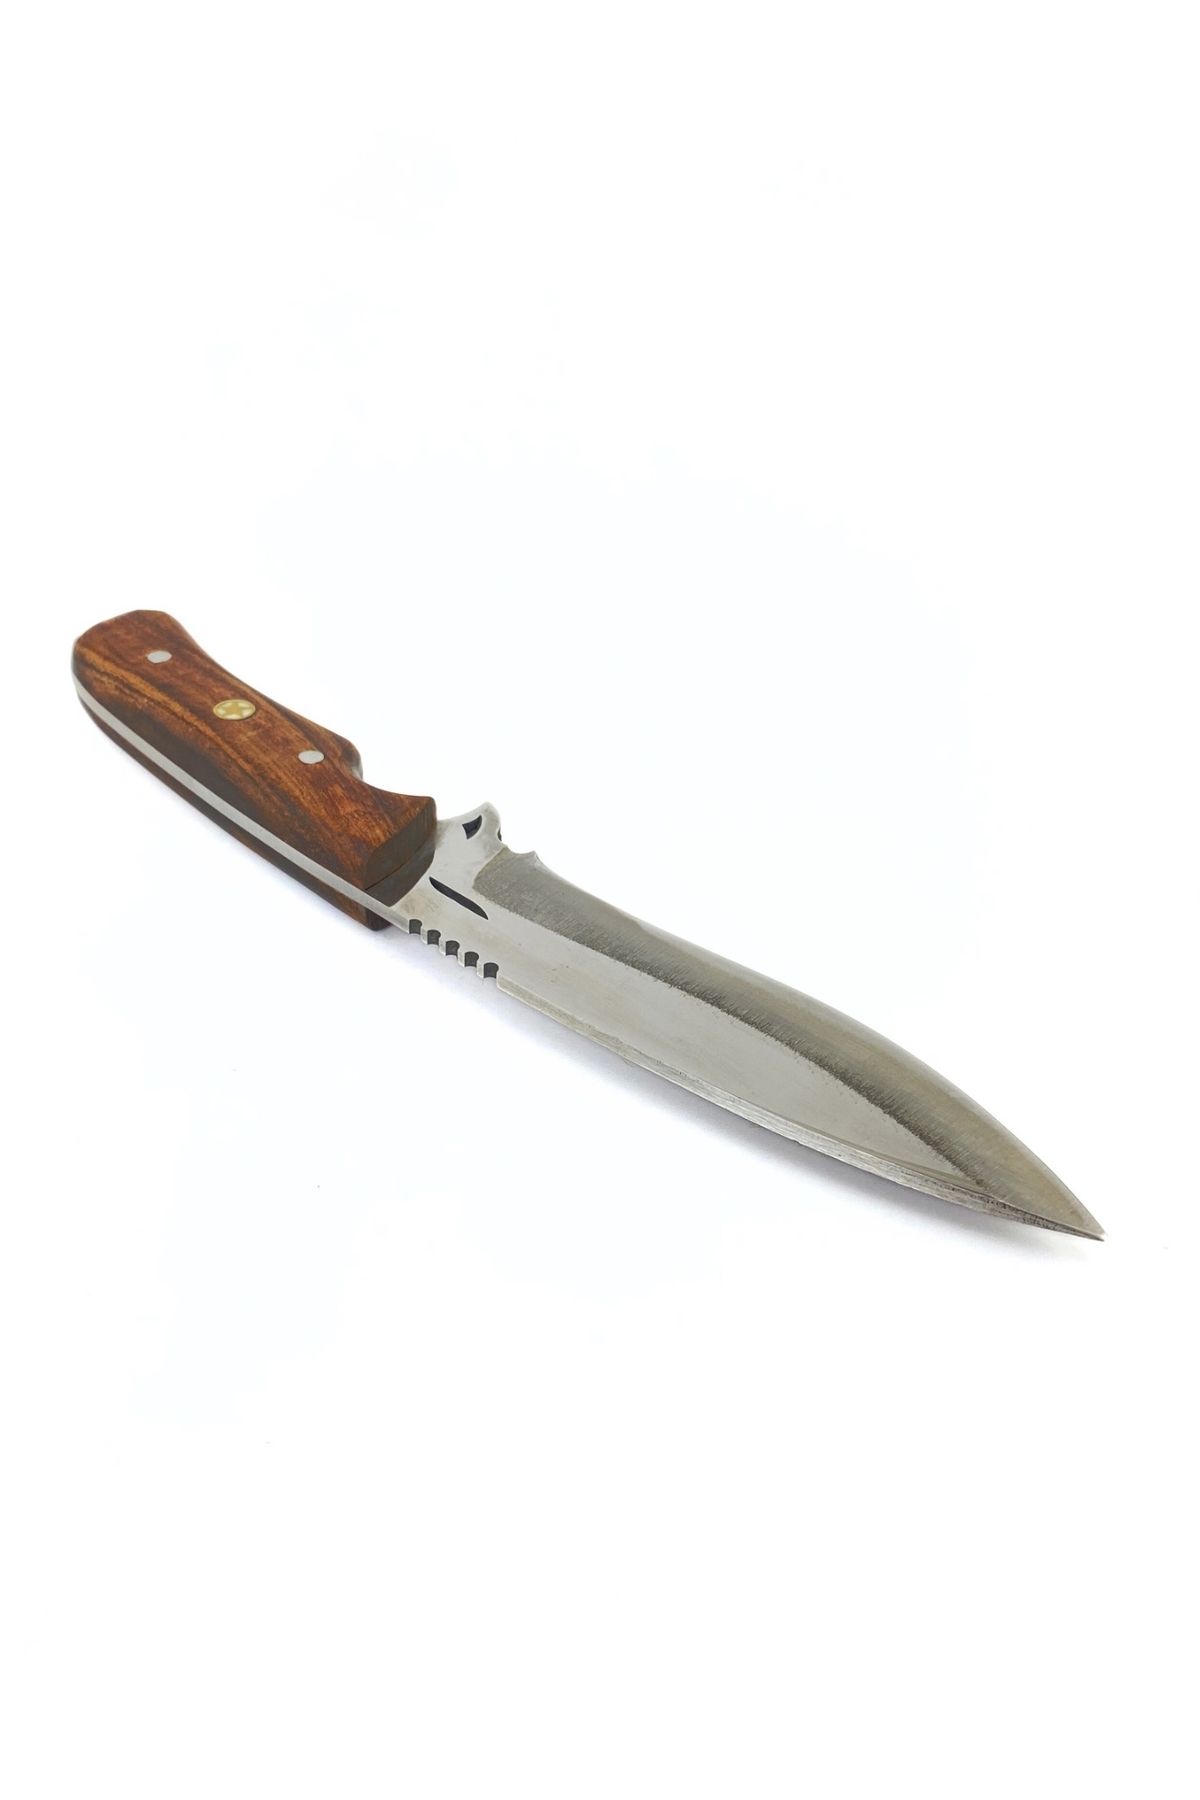 ALPHAS Parlak Üçgen Model Kamp Bıçağı, Ceviz Sap Ve 4116 Alman Serisi Çelik, Deri Kılıf Hediye!!